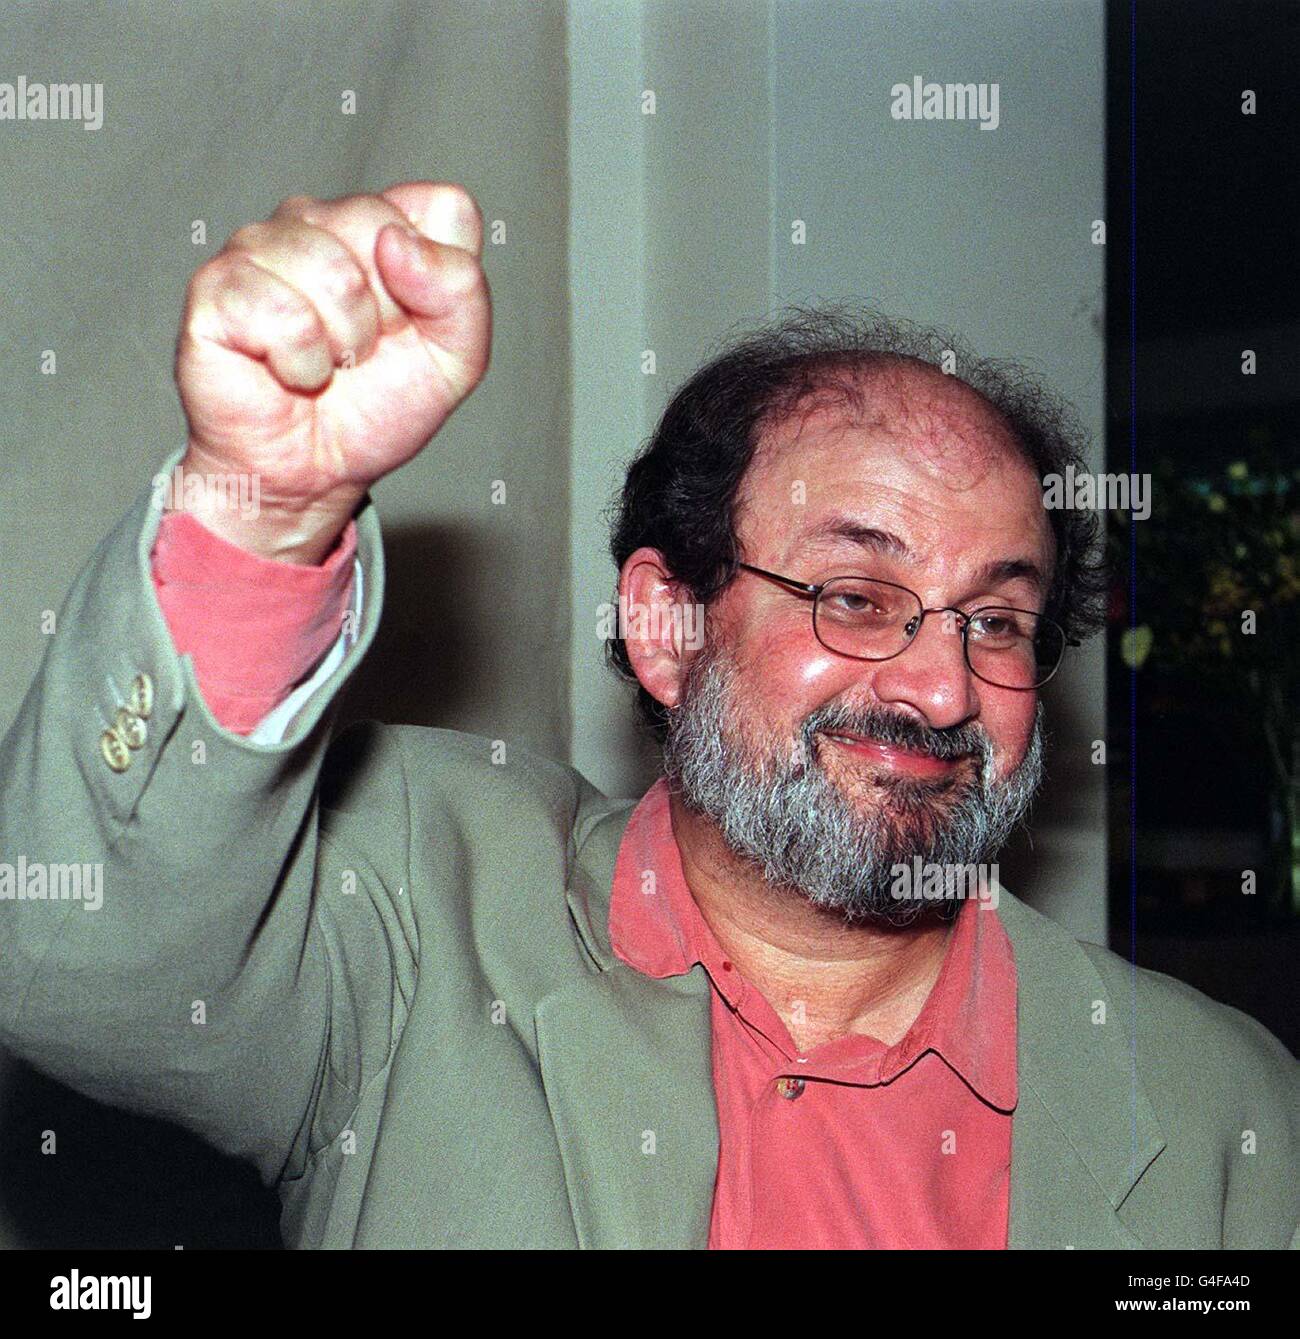 Salman Rushdie schlägt heute (Freitag) bei einer Medienkonferenz in Islington, Nord-London, in die Luft. Herr Rushdie ist frei, in dem Wissen, dass die Bedrohung für sein Leben aufgehoben wurde, sicher zu gehen. Großbritannien und der Iran werden die diplomatischen Beziehungen wieder aufnehmen, nachdem der Iran "Zusicherungen" über das Todesurteil gegen Herrn Rushdie gemacht hat. Foto von John Stillwell/PA Siehe PA Geschichte POLITIK Rushdie. Stockfoto